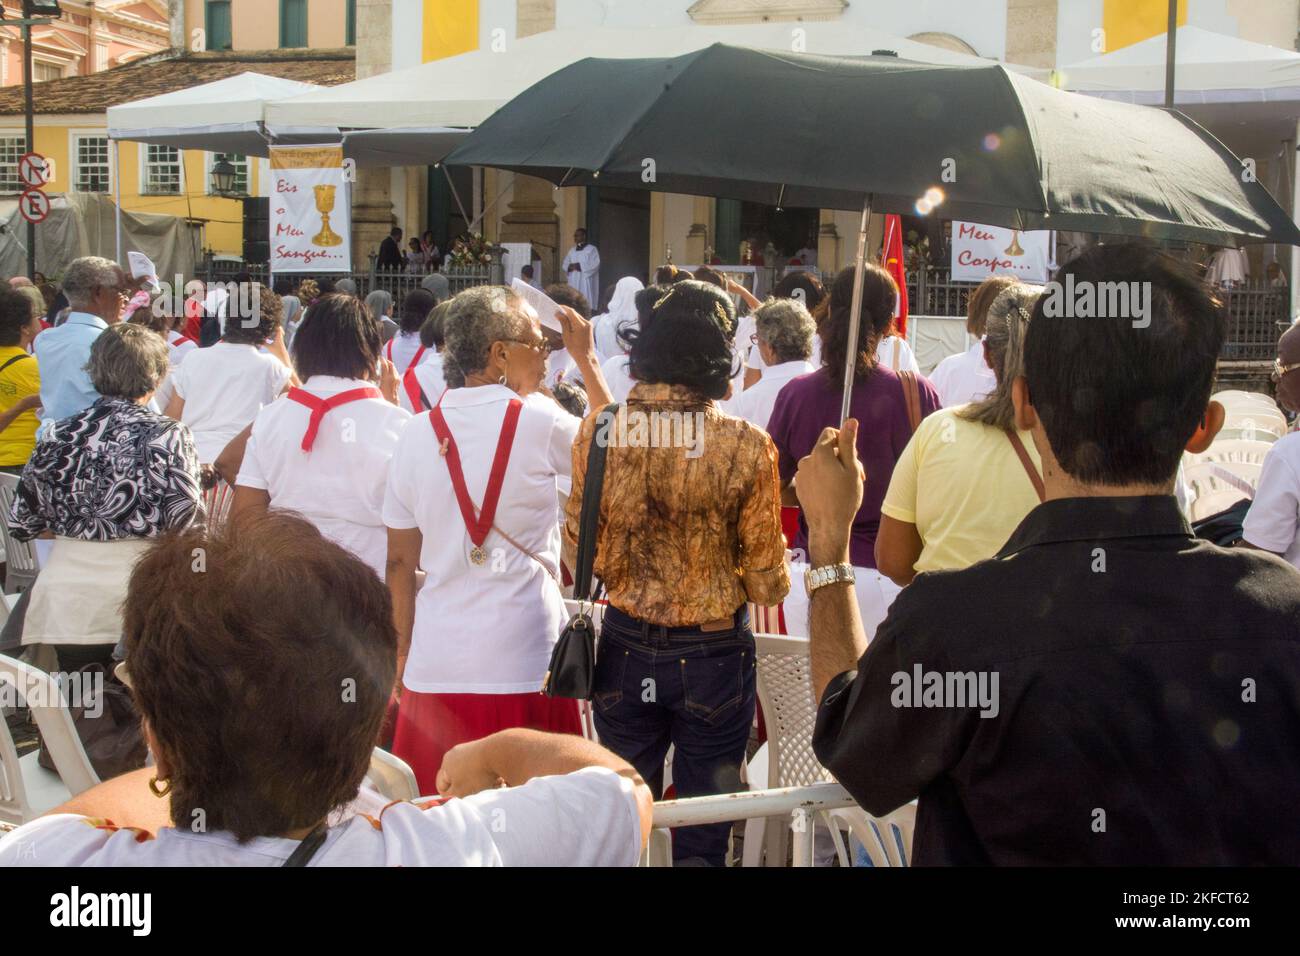 Salvador, Bahia, Brasilien - 26. Mai 2016: In der Stadt Sal stehen Menschen vor der Kirche und warten auf die Feier des Corpus Christ Tages Stockfoto